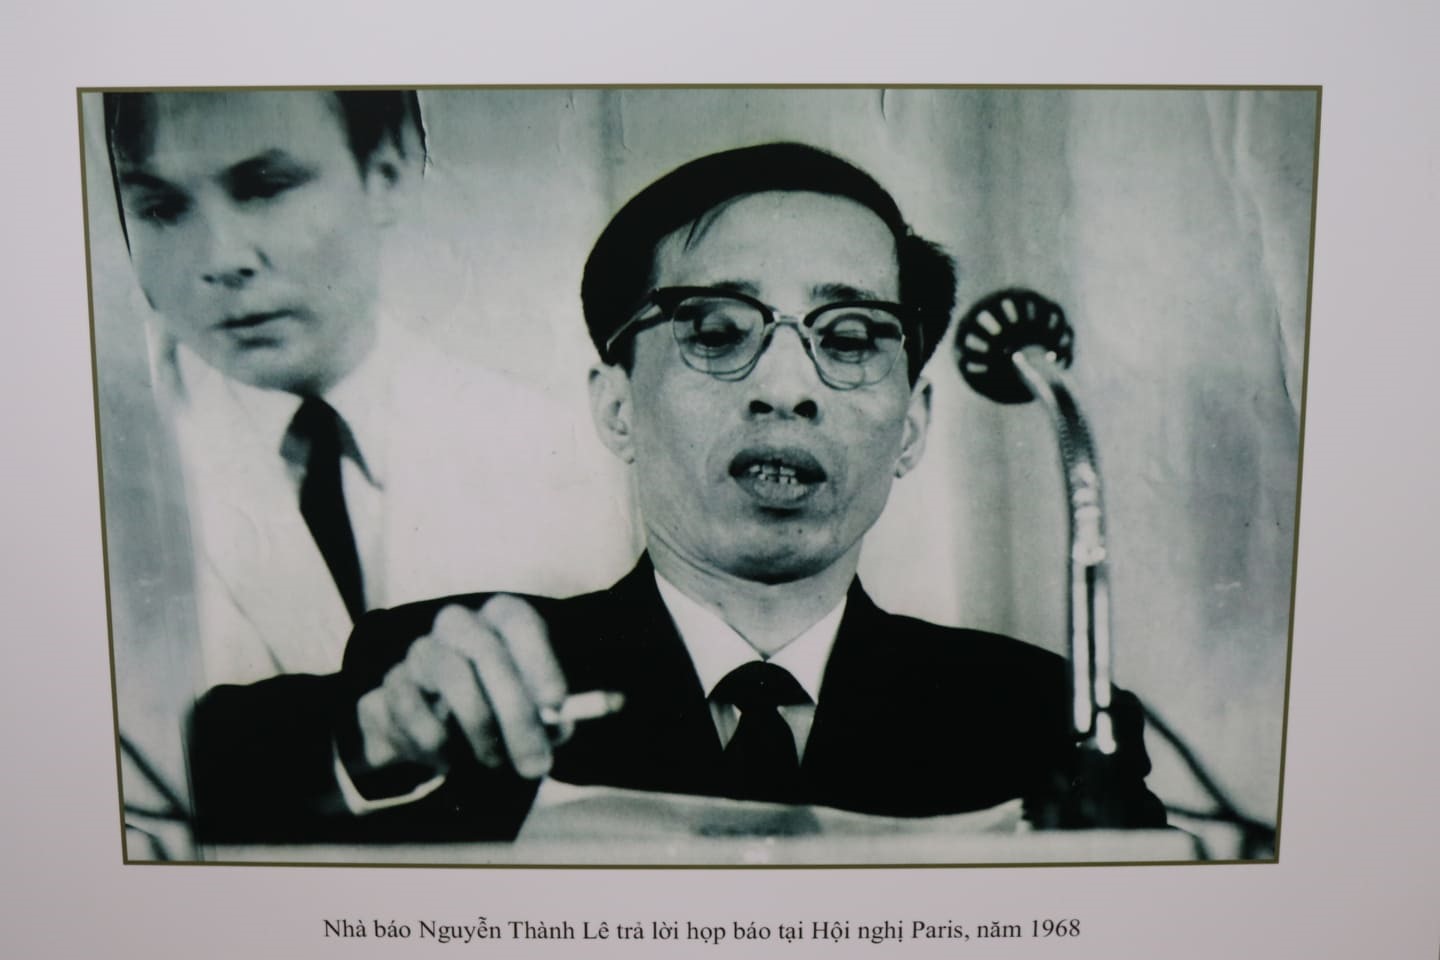 Ảnh nhà báo Nguyễn Thành Lê trả lời họp báo tại Hội nghị Paris năn 1968. Ảnh chụp tư liệu